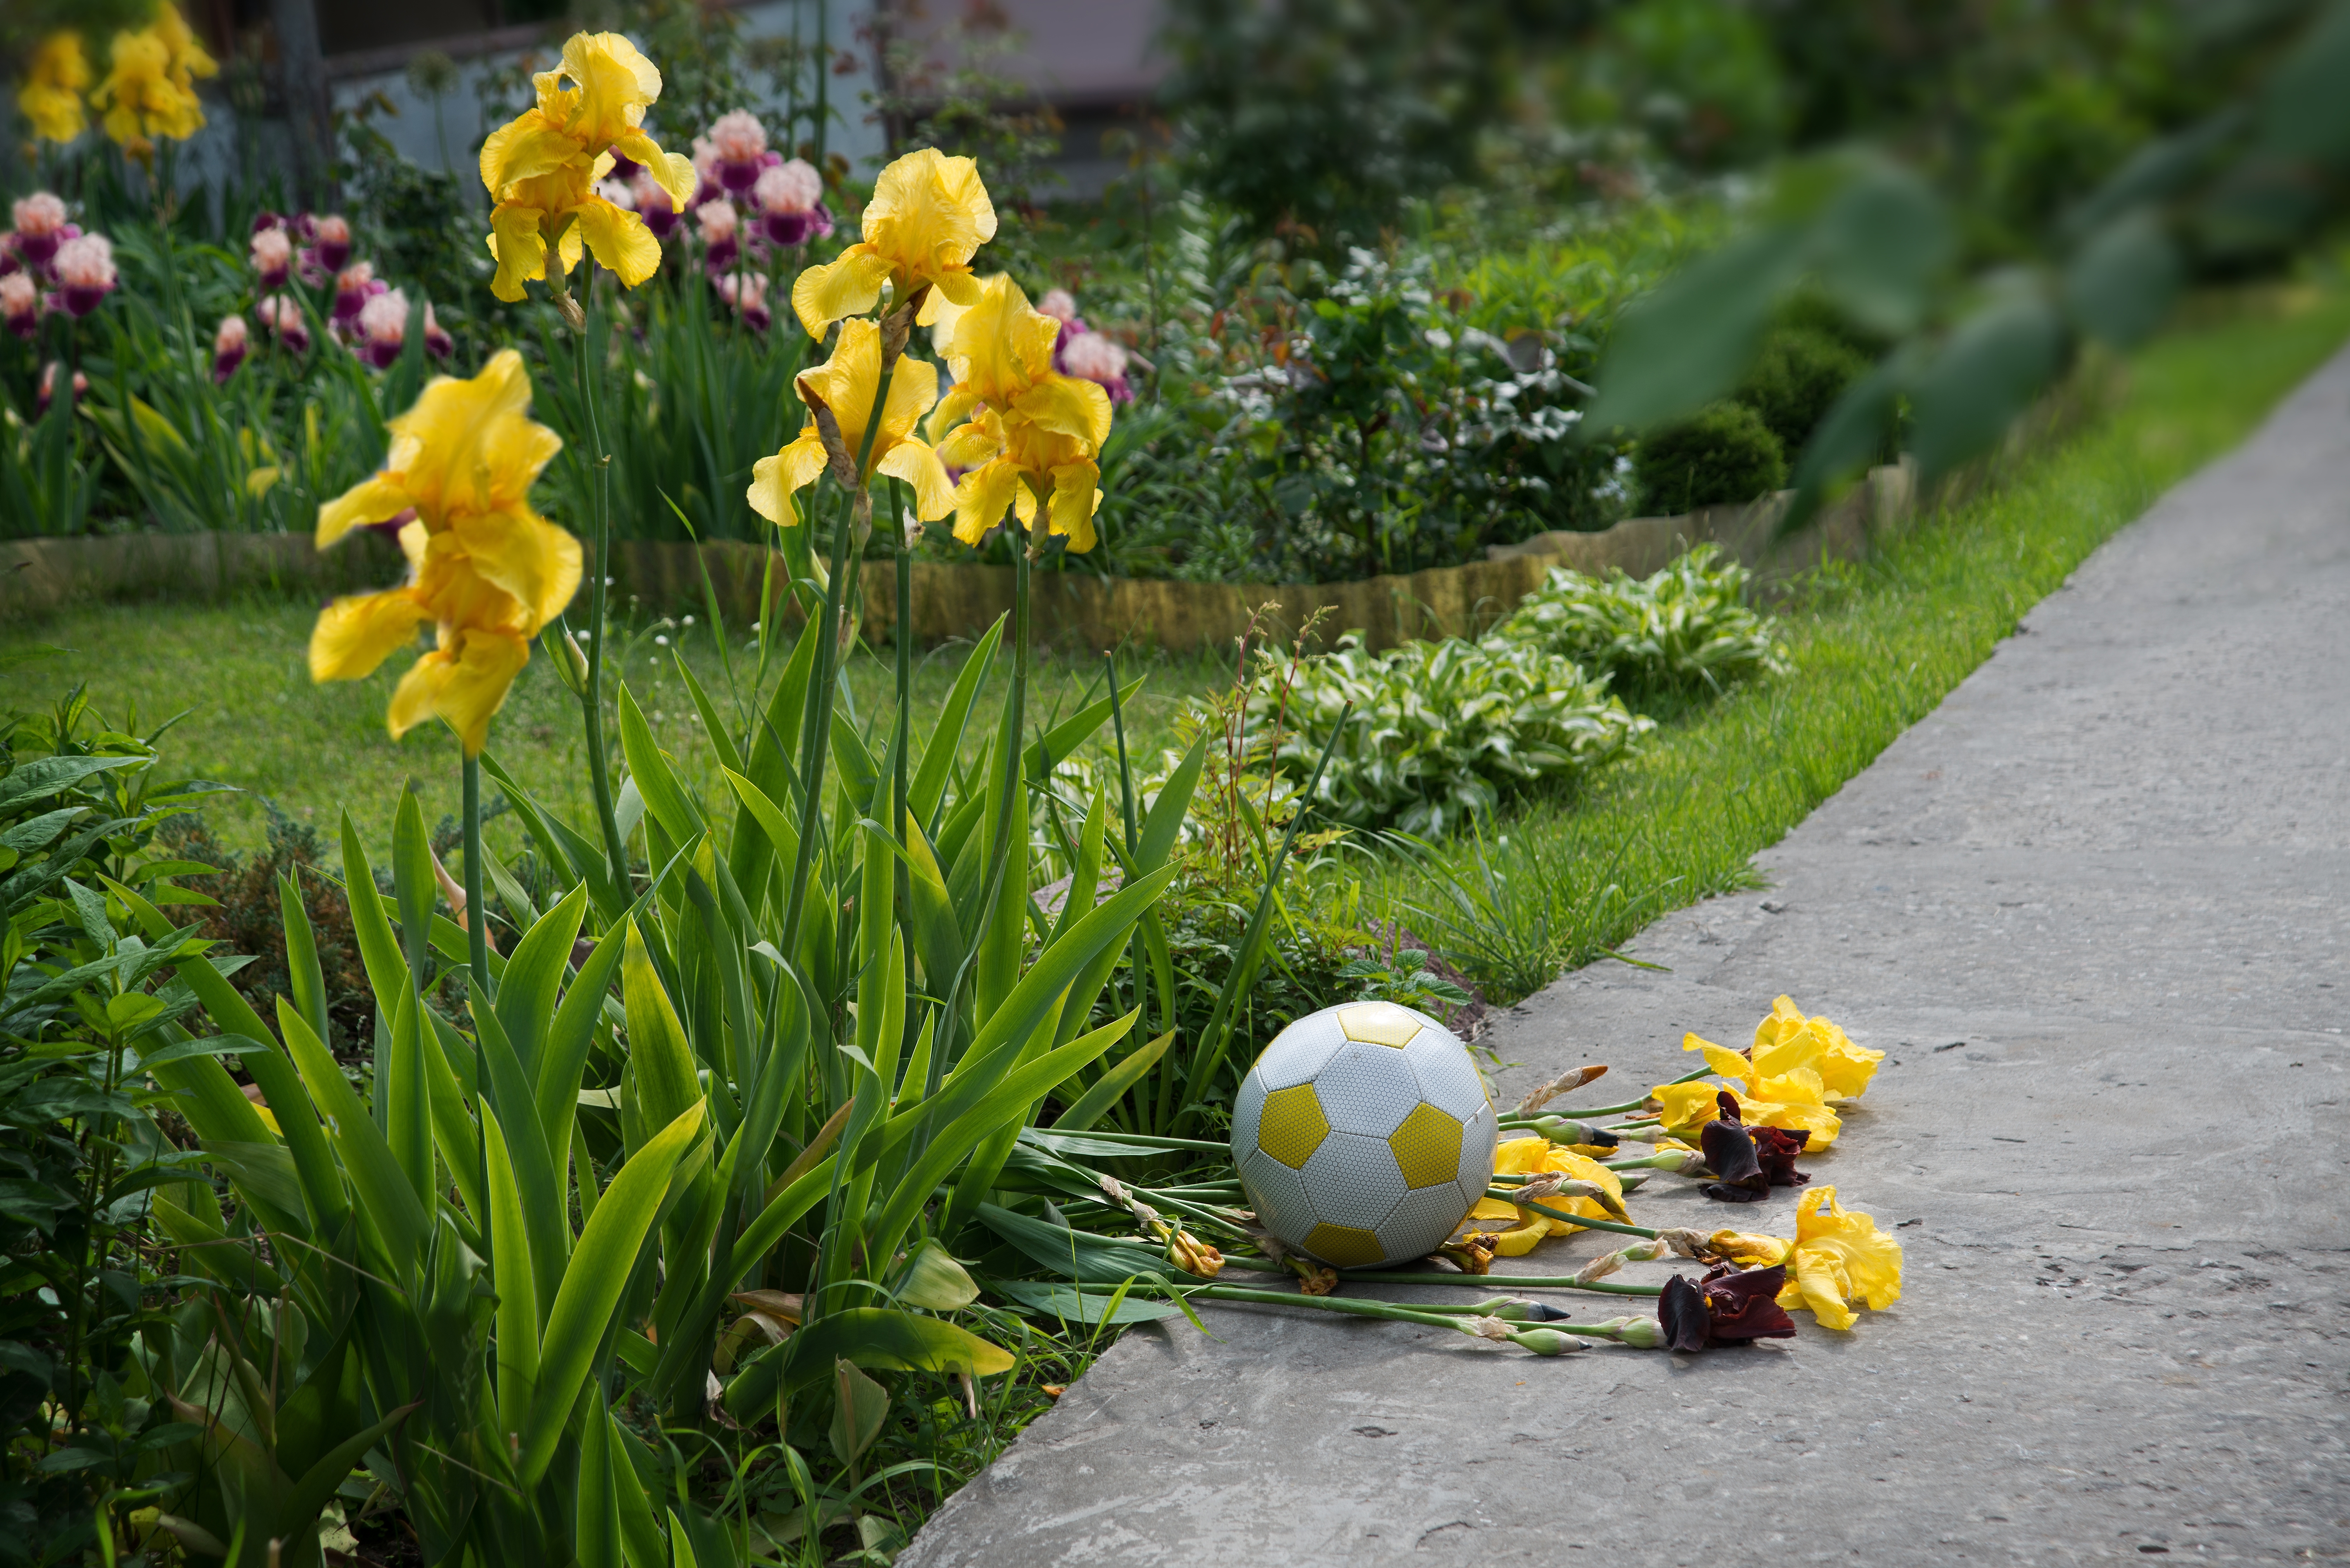 A garden ruined by a soccer ball | Source: Shutterstock